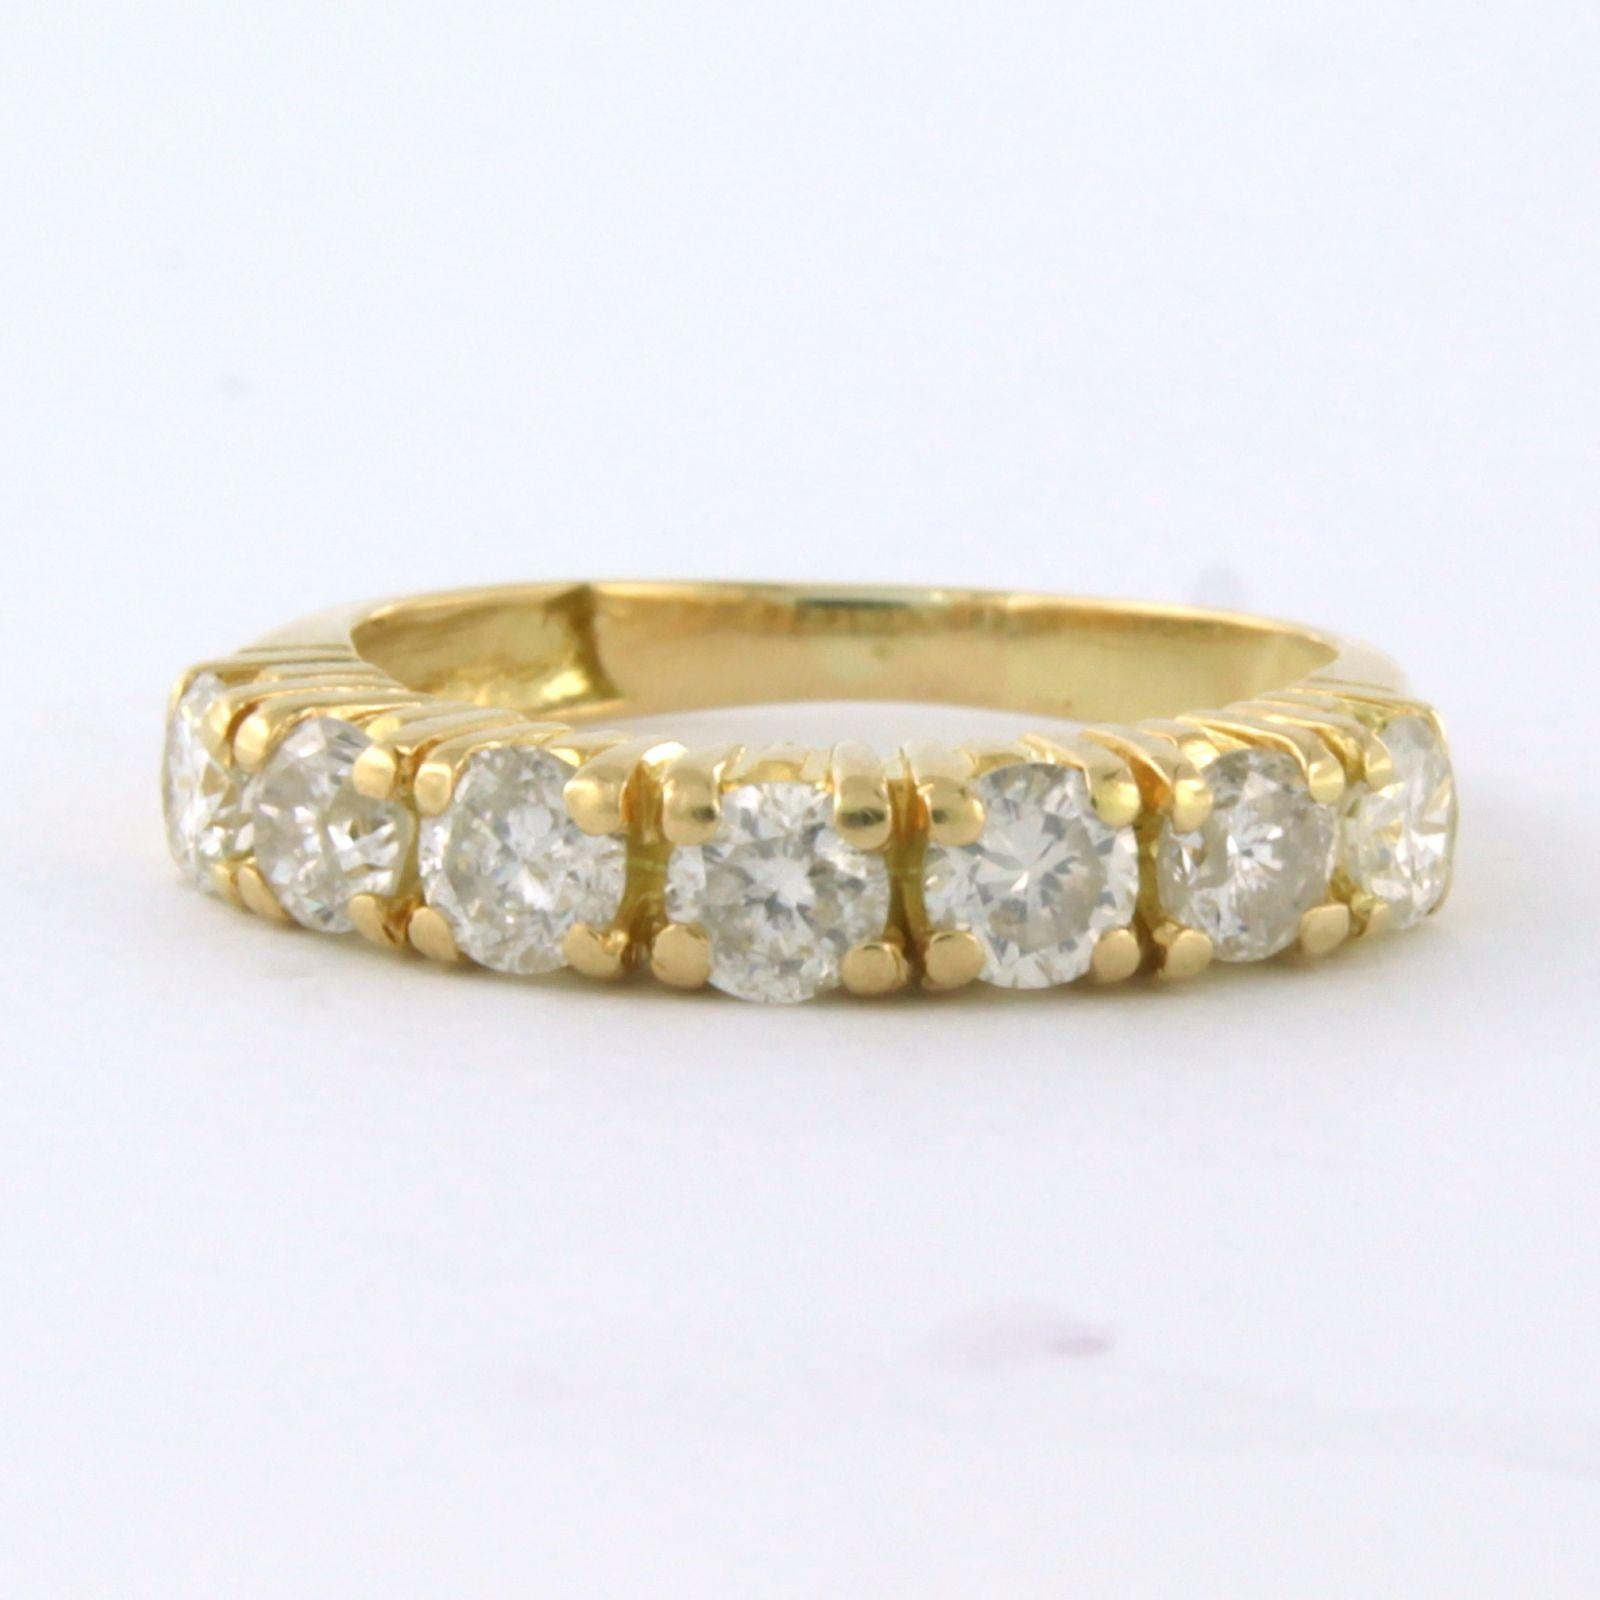 Reihenring aus 18 kt Gelbgold, besetzt mit Diamanten im Brillantschliff. 0,97 ct - J/K - SI/piq - Ringgröße U.S. 4 - EU. 15(47)

detaillierte Beschreibung:

die Oberseite des Rings ist 3,6 mm breit und 3,5 mm hoch

Ringgröße U.S. 4 - EU. 15(47),